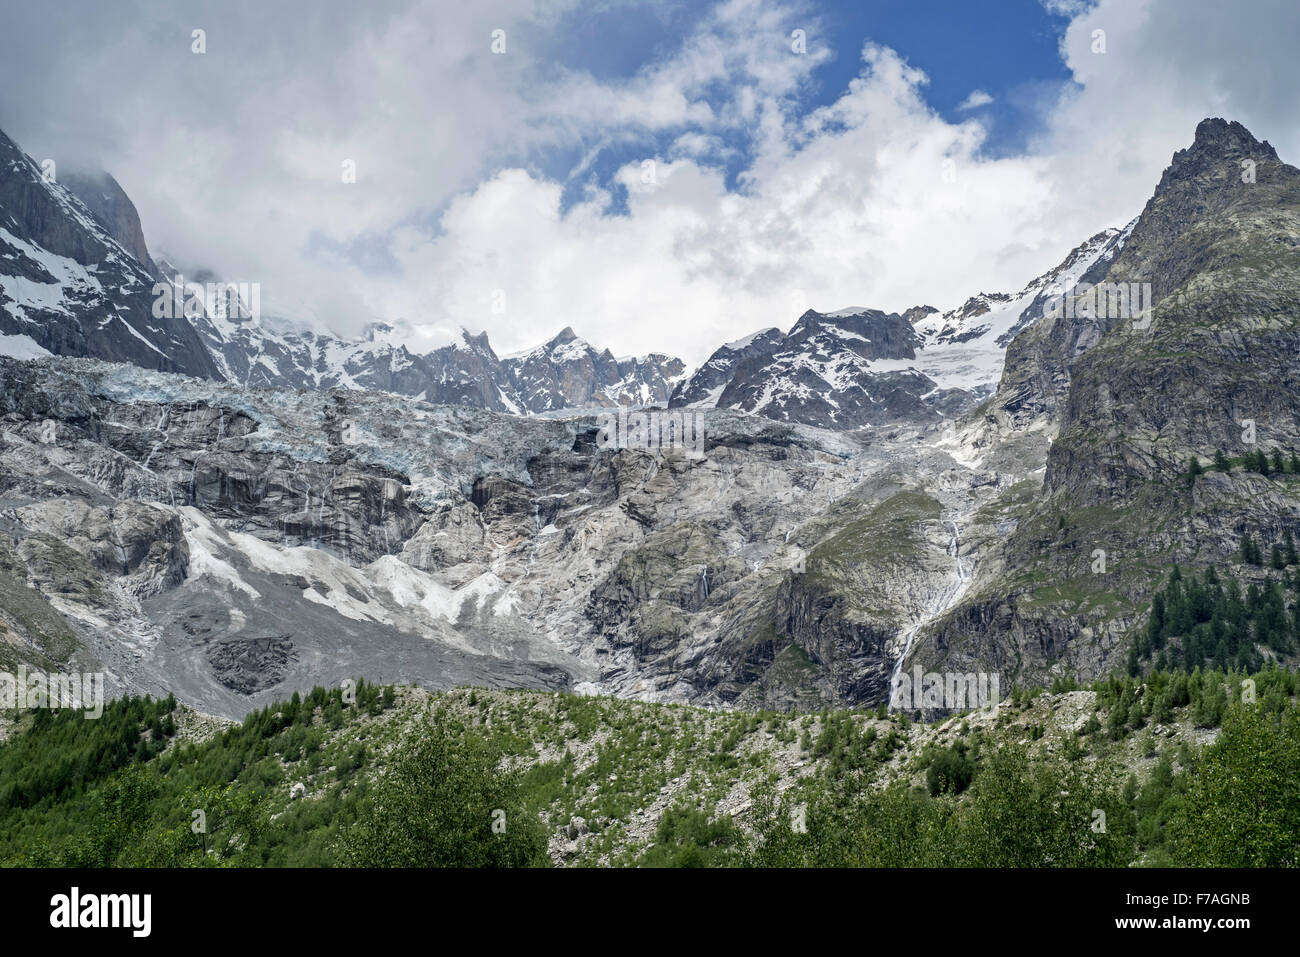 Il ghiacciaio in ritirata nel massiccio del Monte Bianco visto dalla Val Veny valle, Graian Alps, Italia Foto Stock